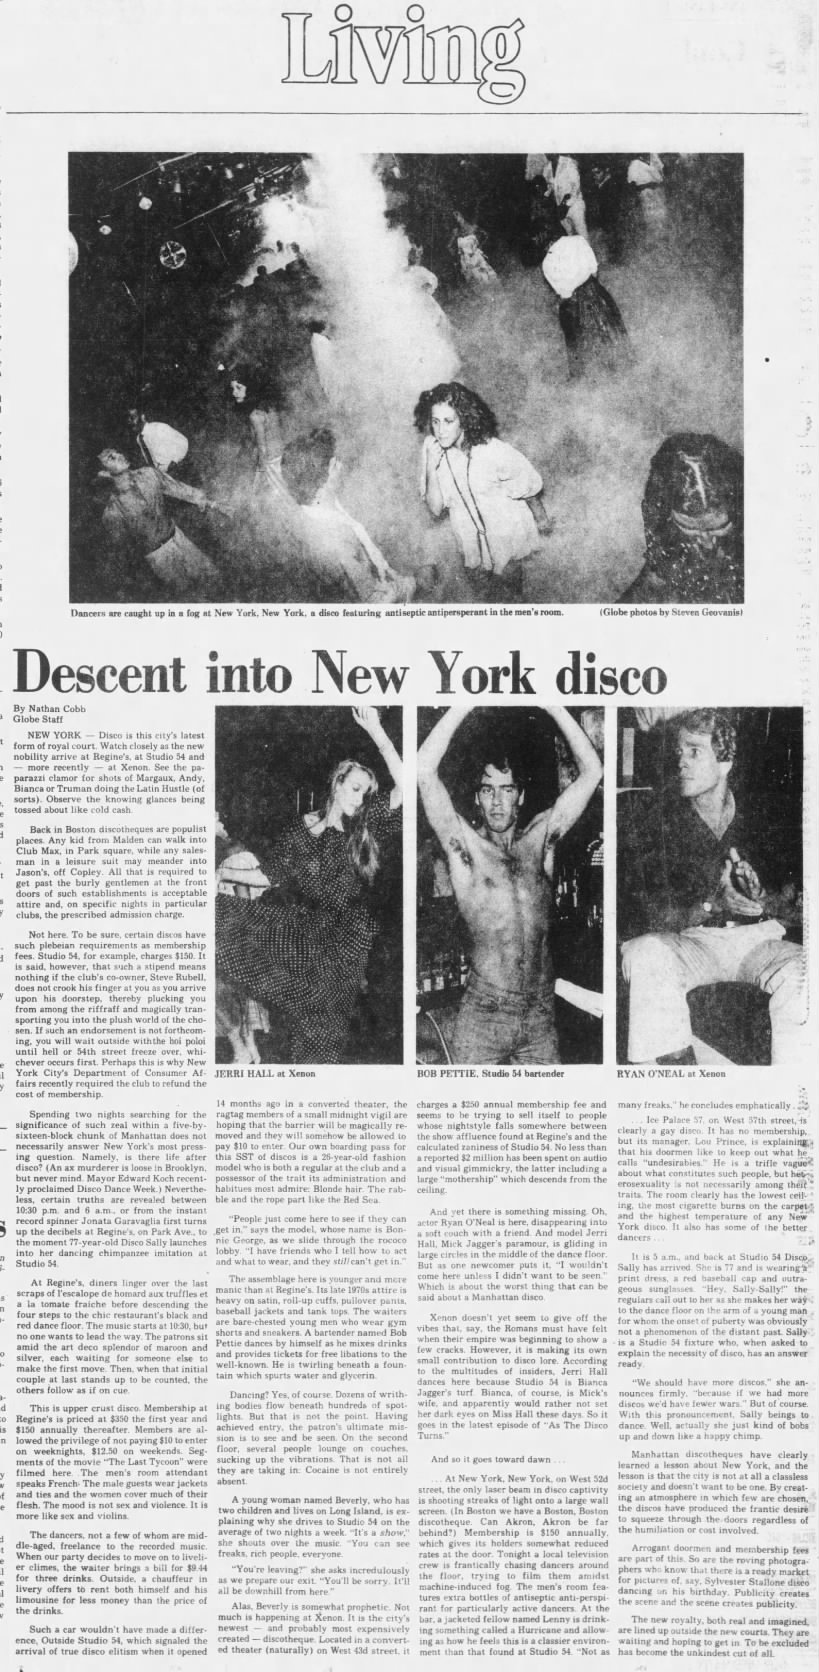 Descent into New York Disco (15 July 1978, Boston Globe)